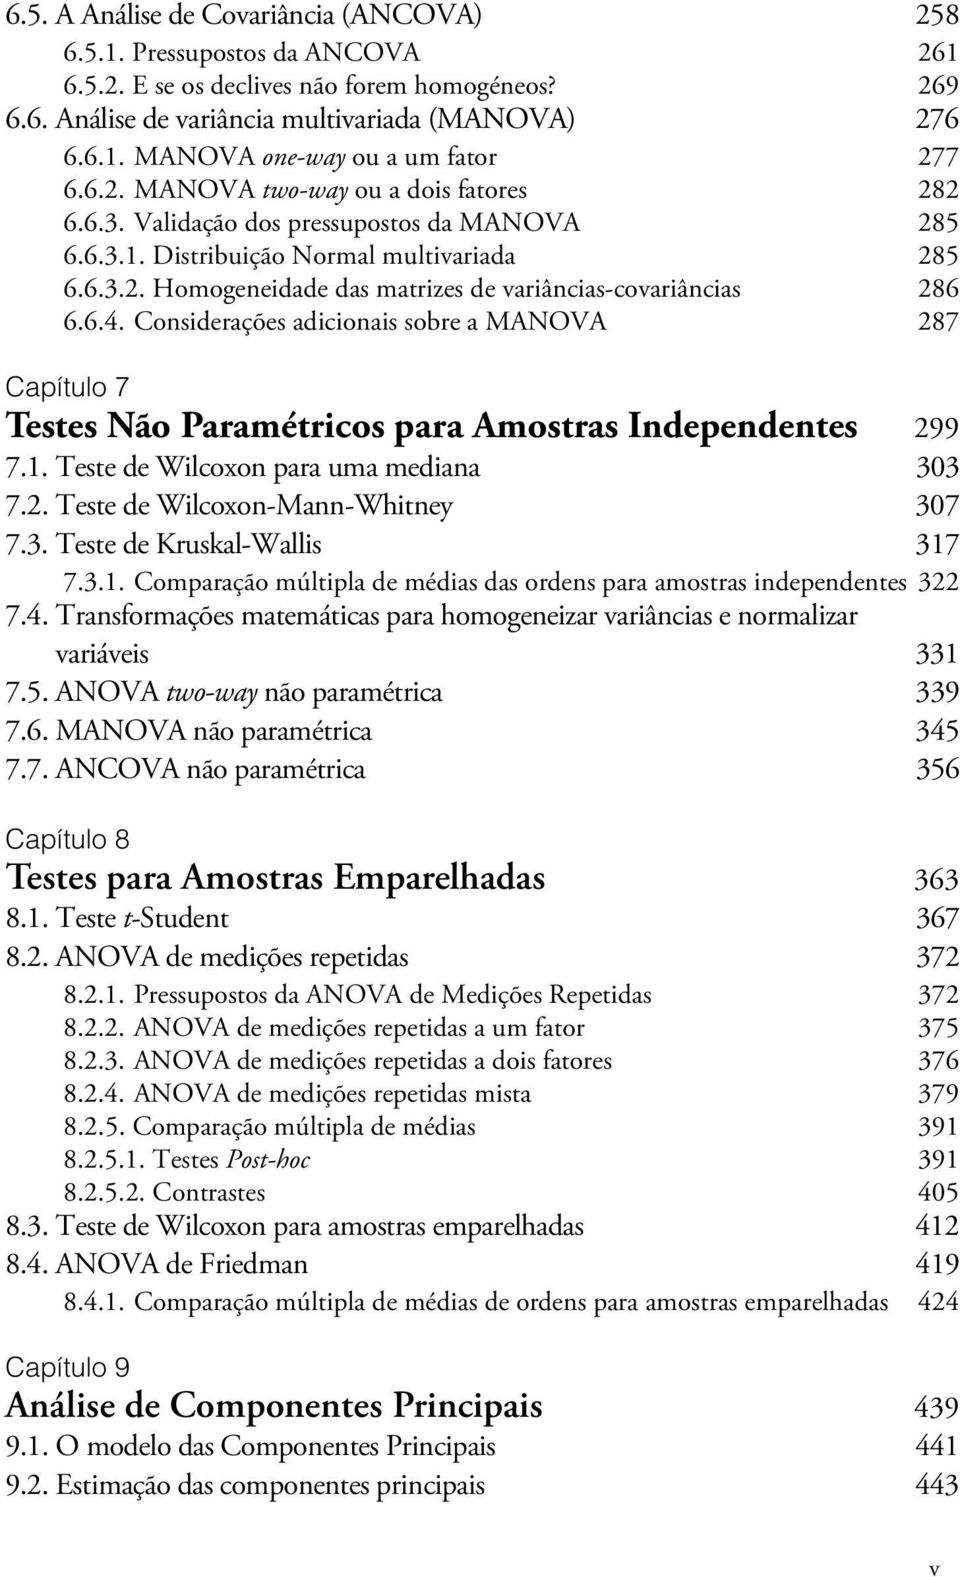 6.4. Considerações adicionais sobre a MANOVA 287 Capítulo 7 Testes Não Paramétricos para Amostras Independentes 299 7.1. Teste de Wilcoxon para uma mediana 303 7.2. Teste de Wilcoxon-Mann-Whitney 307 7.